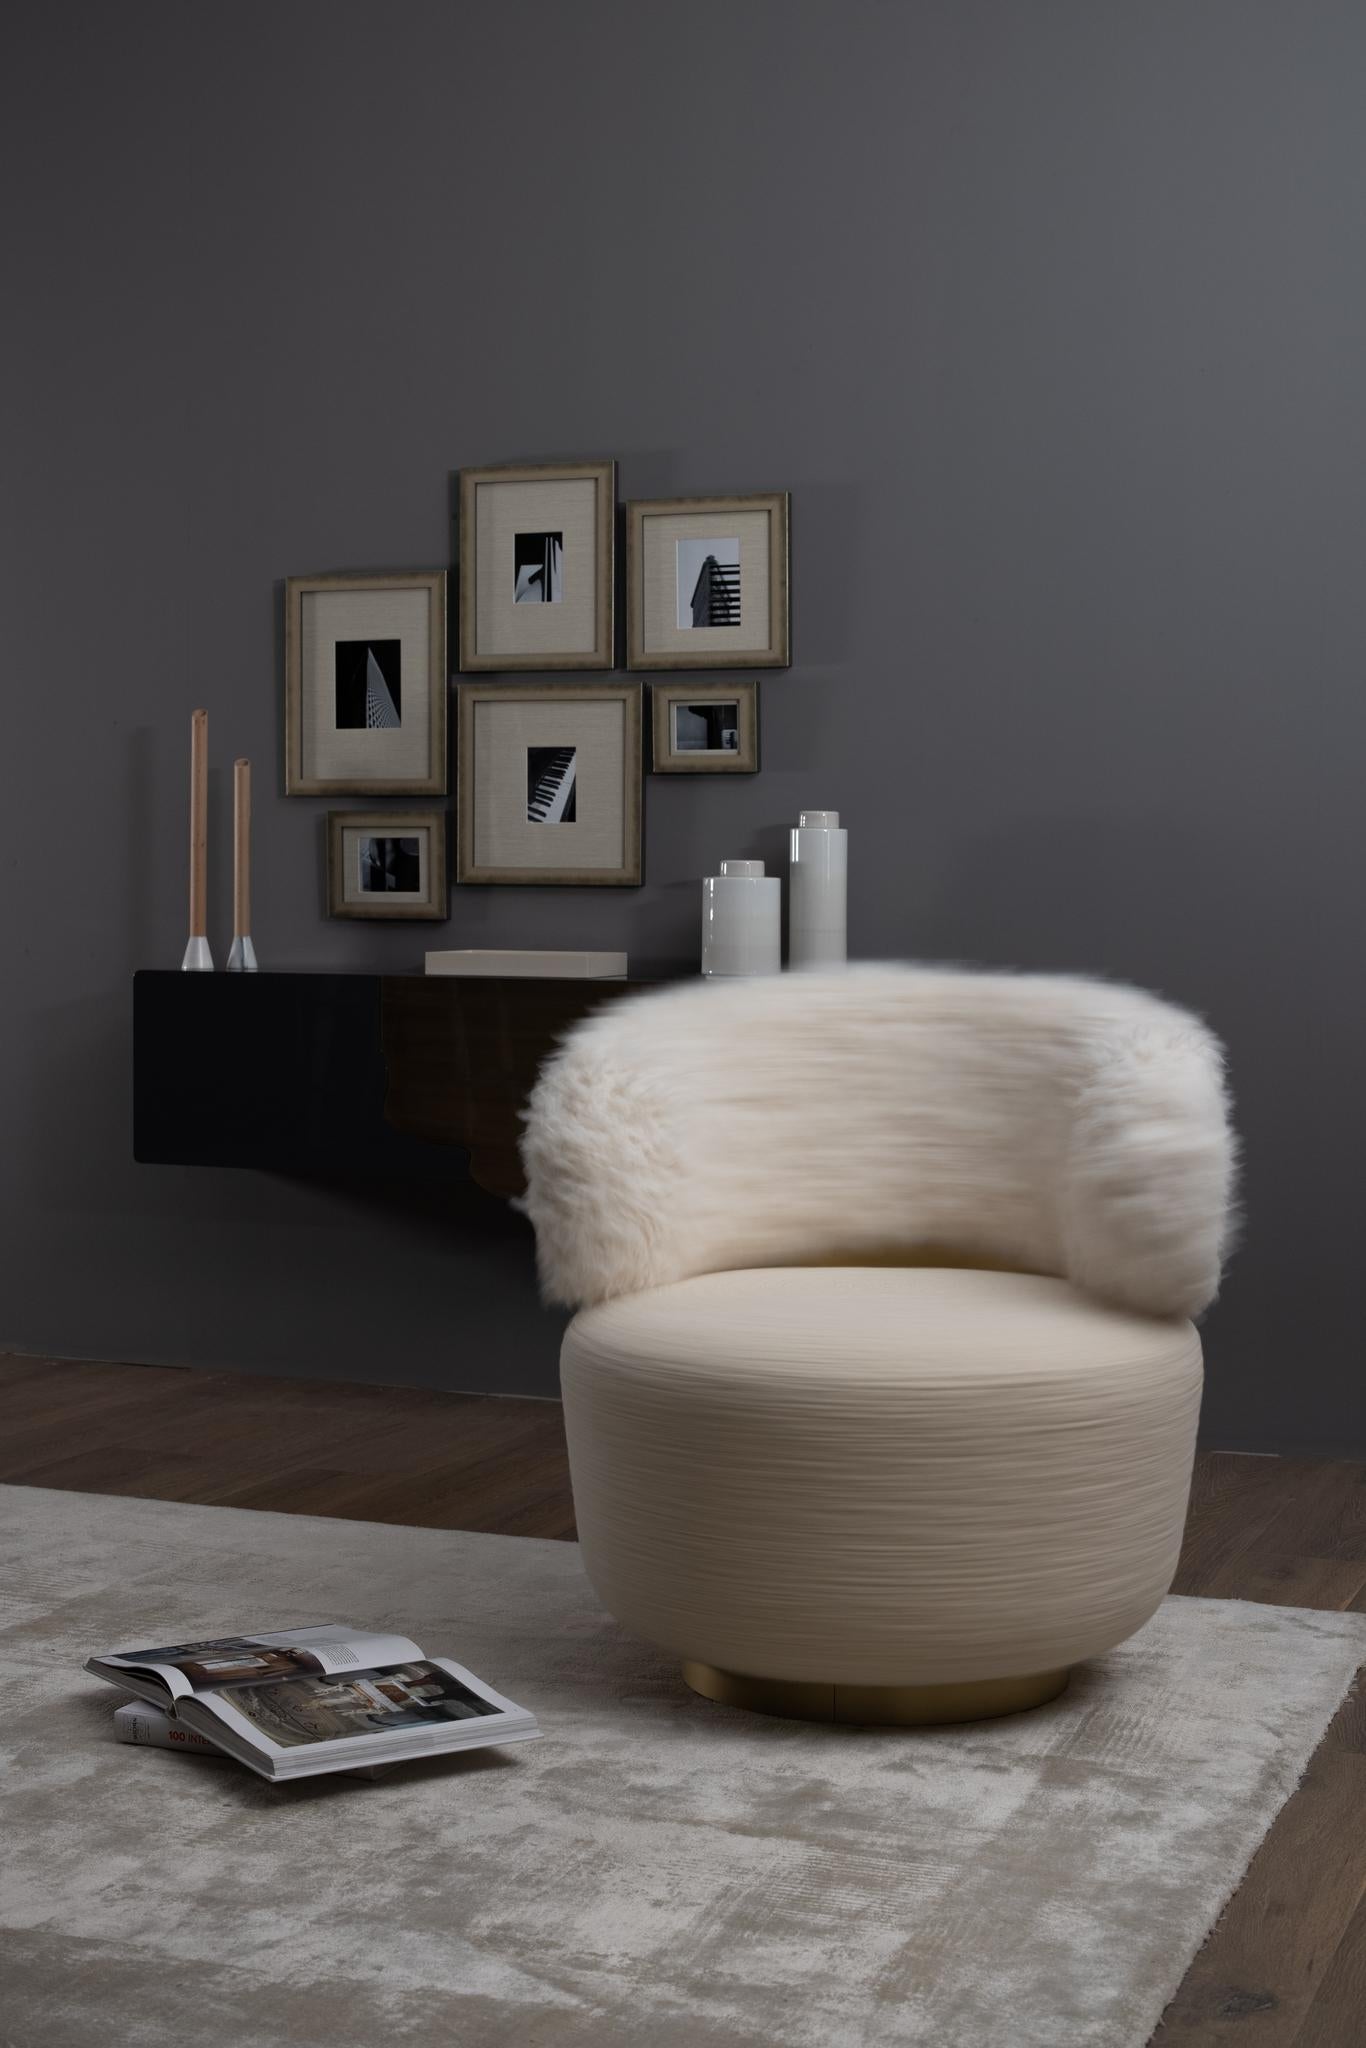 Caju Swivel Lounge Chair, Contemporary Collection, handgefertigt in Portugal - Europa von Greenapple.

Der Loungesessel Caju ist ein trendiges Möbelstück, das die organische Form einer Cashew verkörpert. Das Design des mit Baumwollsamt und Kunstfell